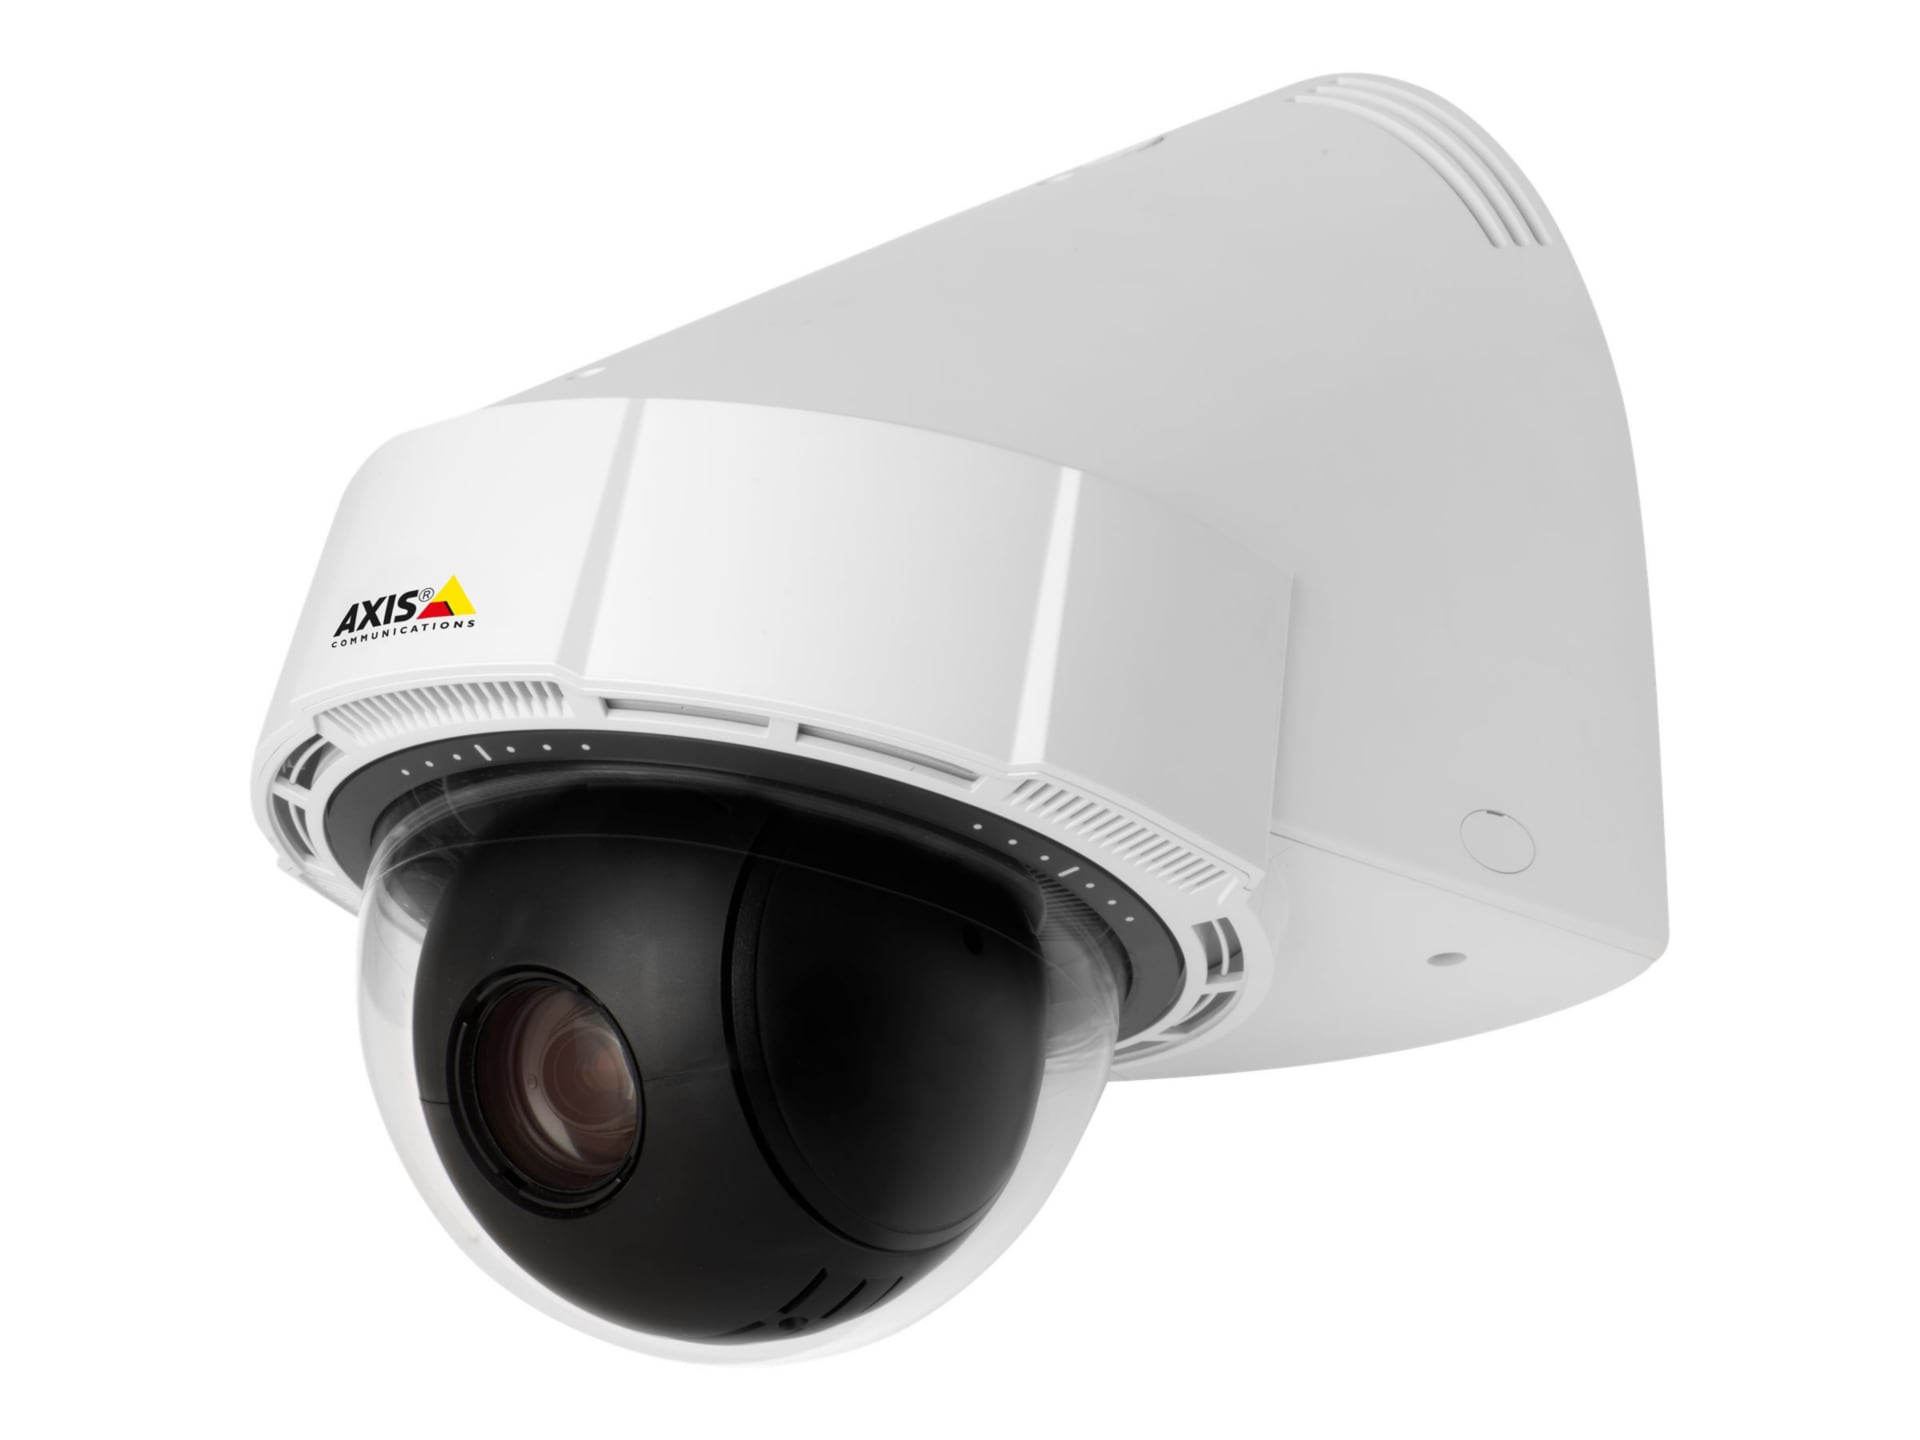 AXIS P5414-E PTZ Dome Network Camera 60Hz - network surveillance camera